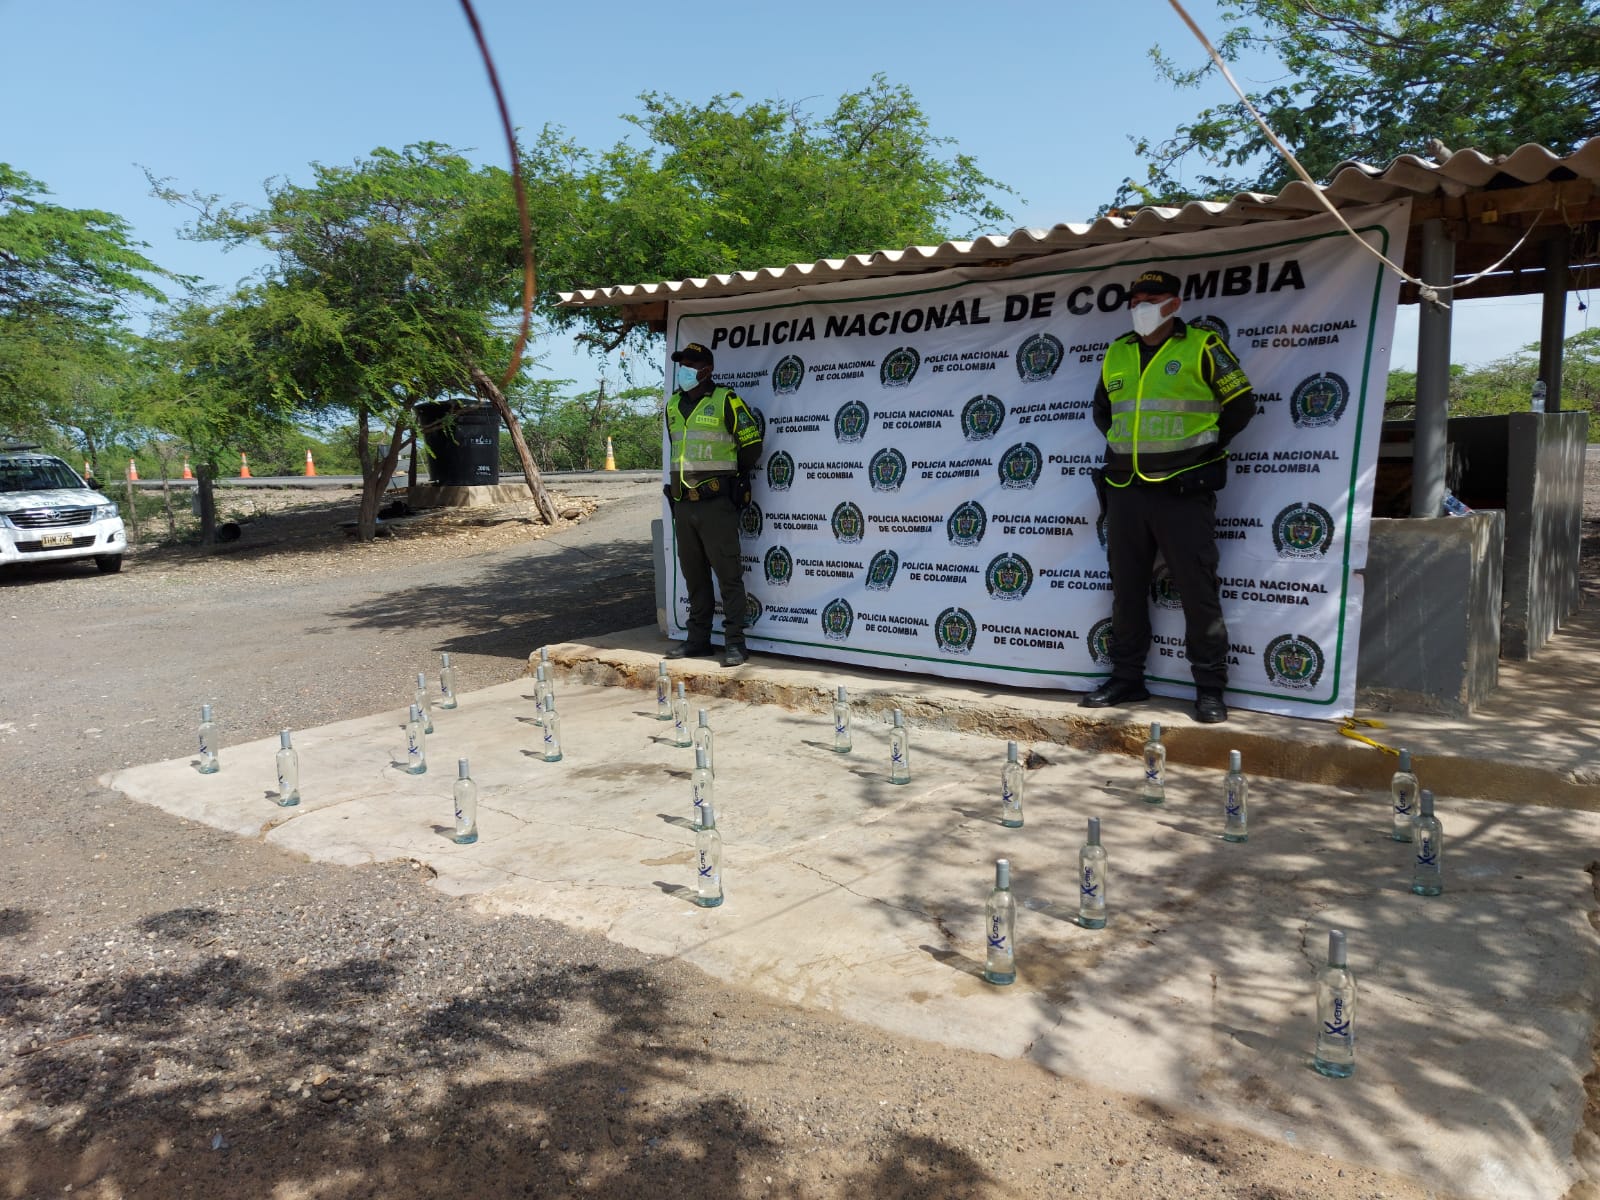 https://www.notasrosas.com/Setra realiza capturas e incauta licores y medicamentos, en vías de La Guajira